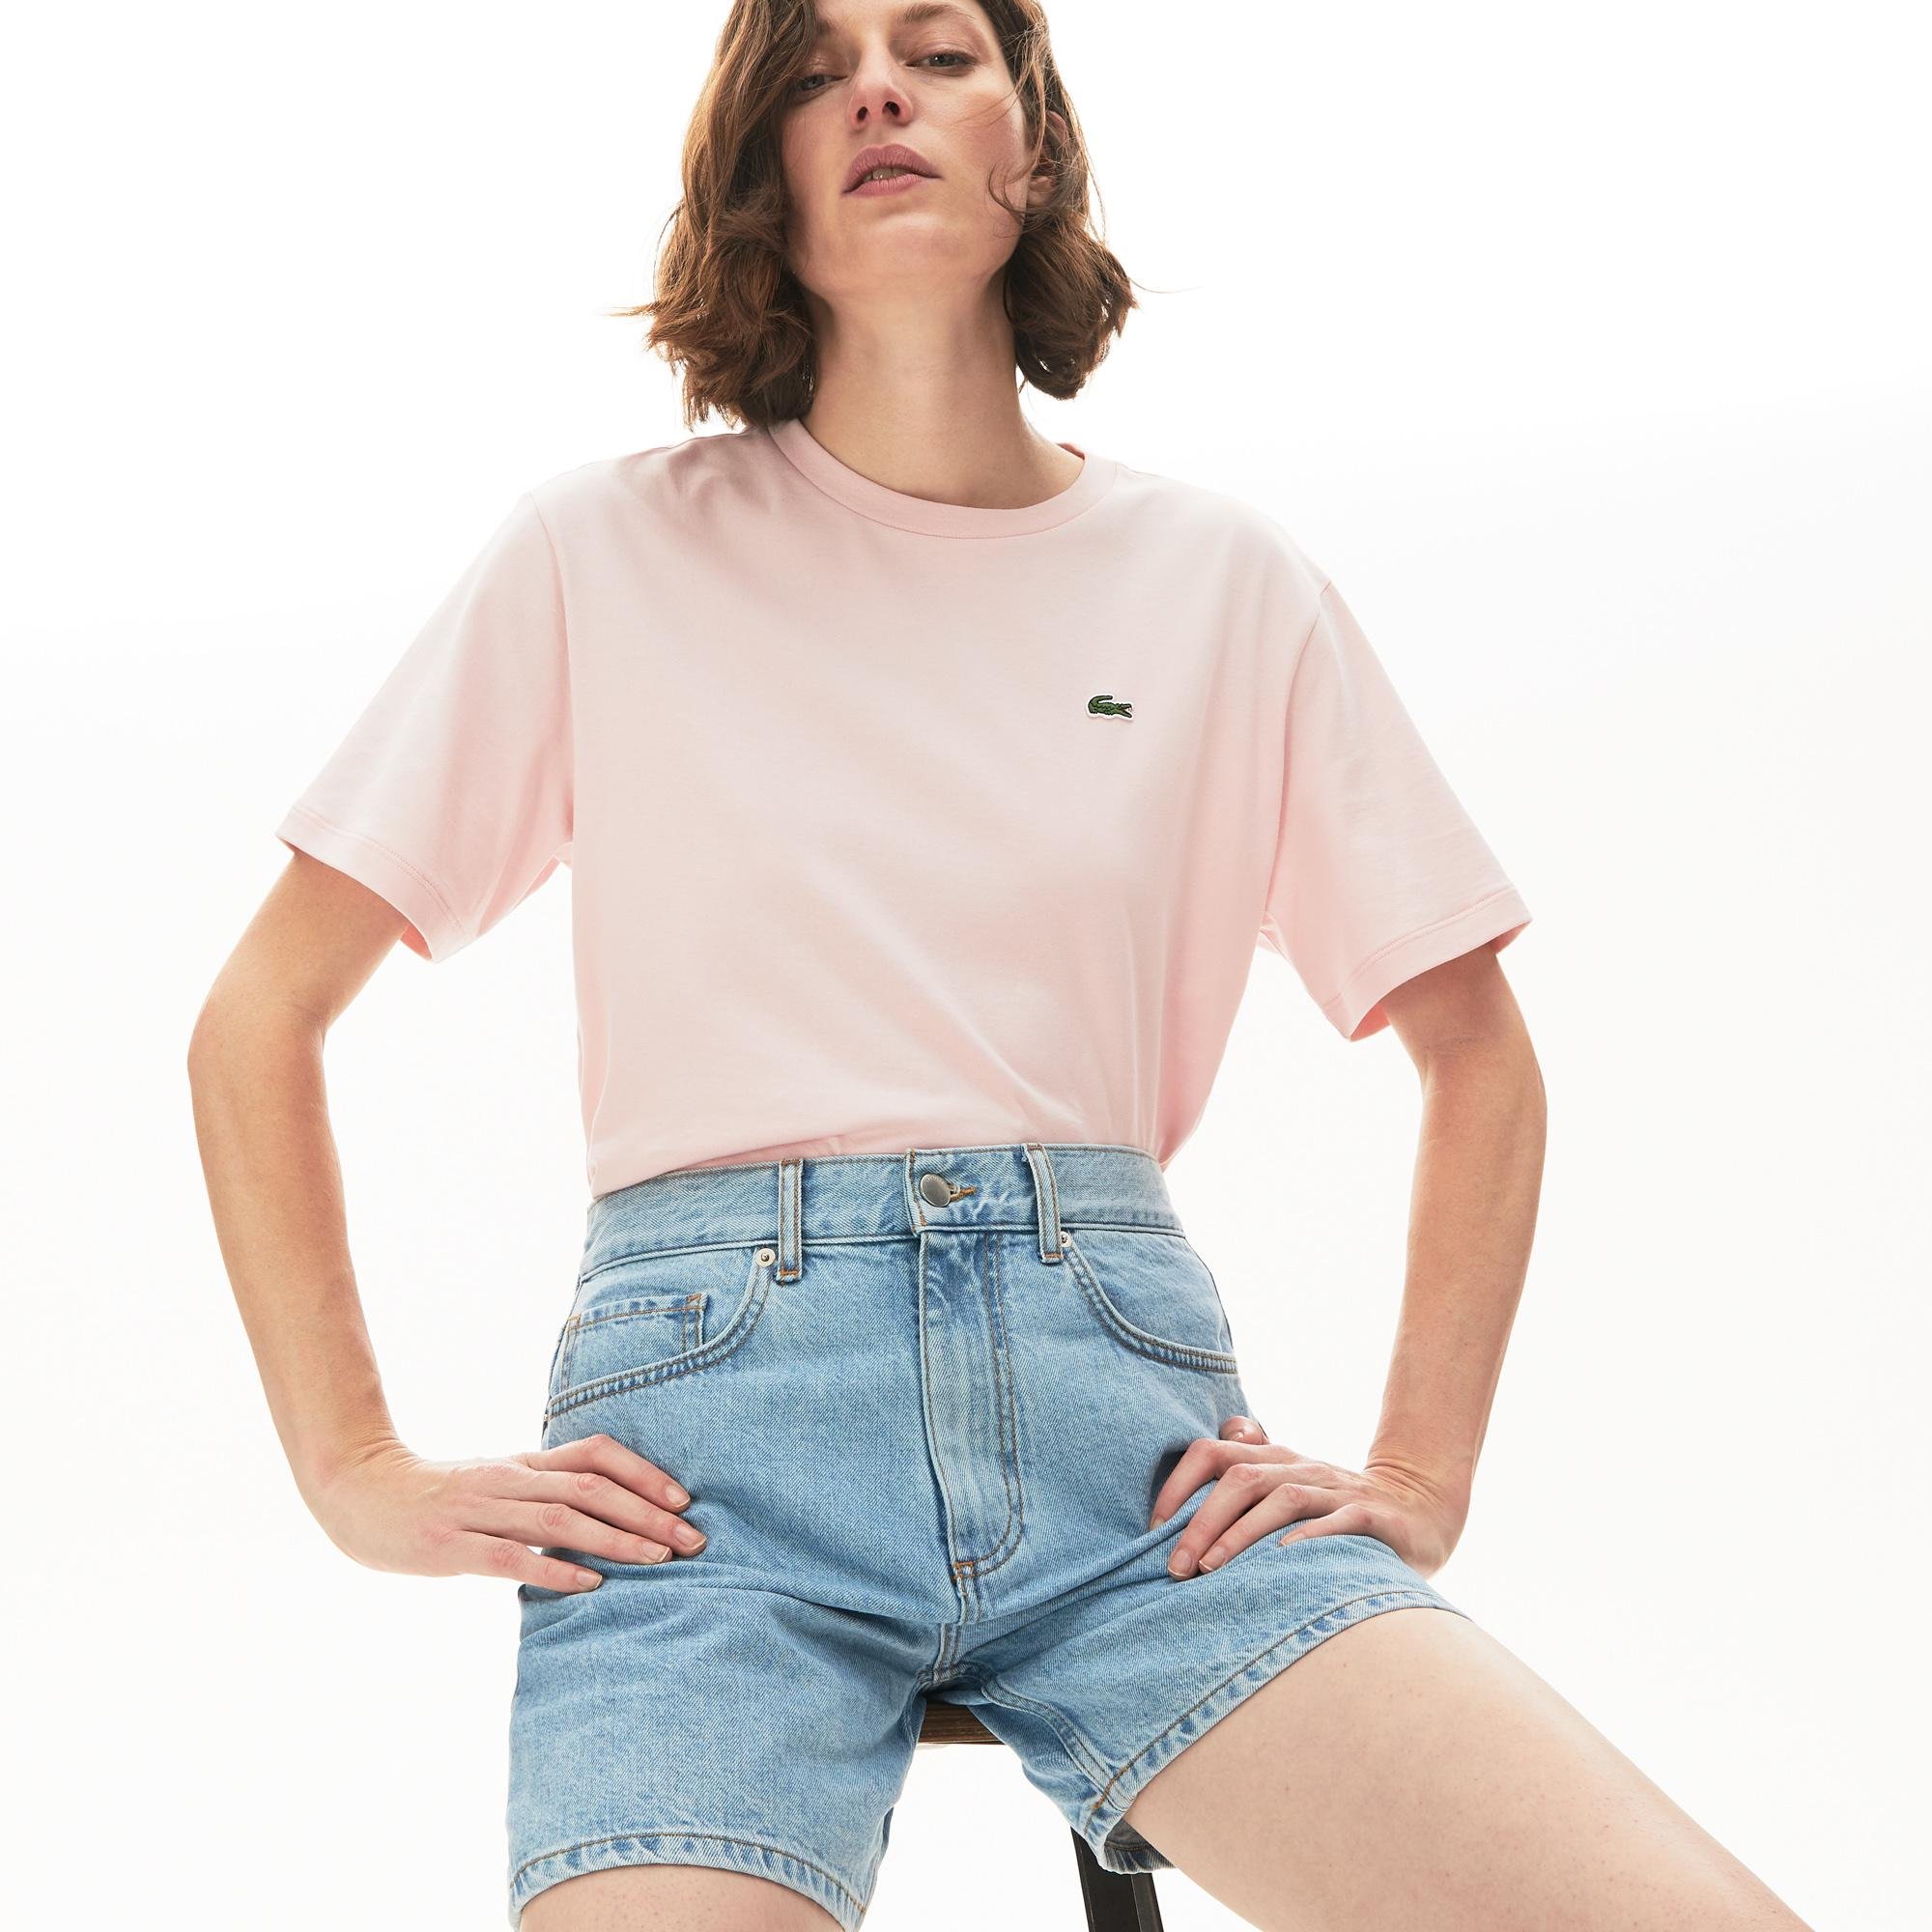 Lacoste Women's Crew Neck Premium Cotton T-Shirt